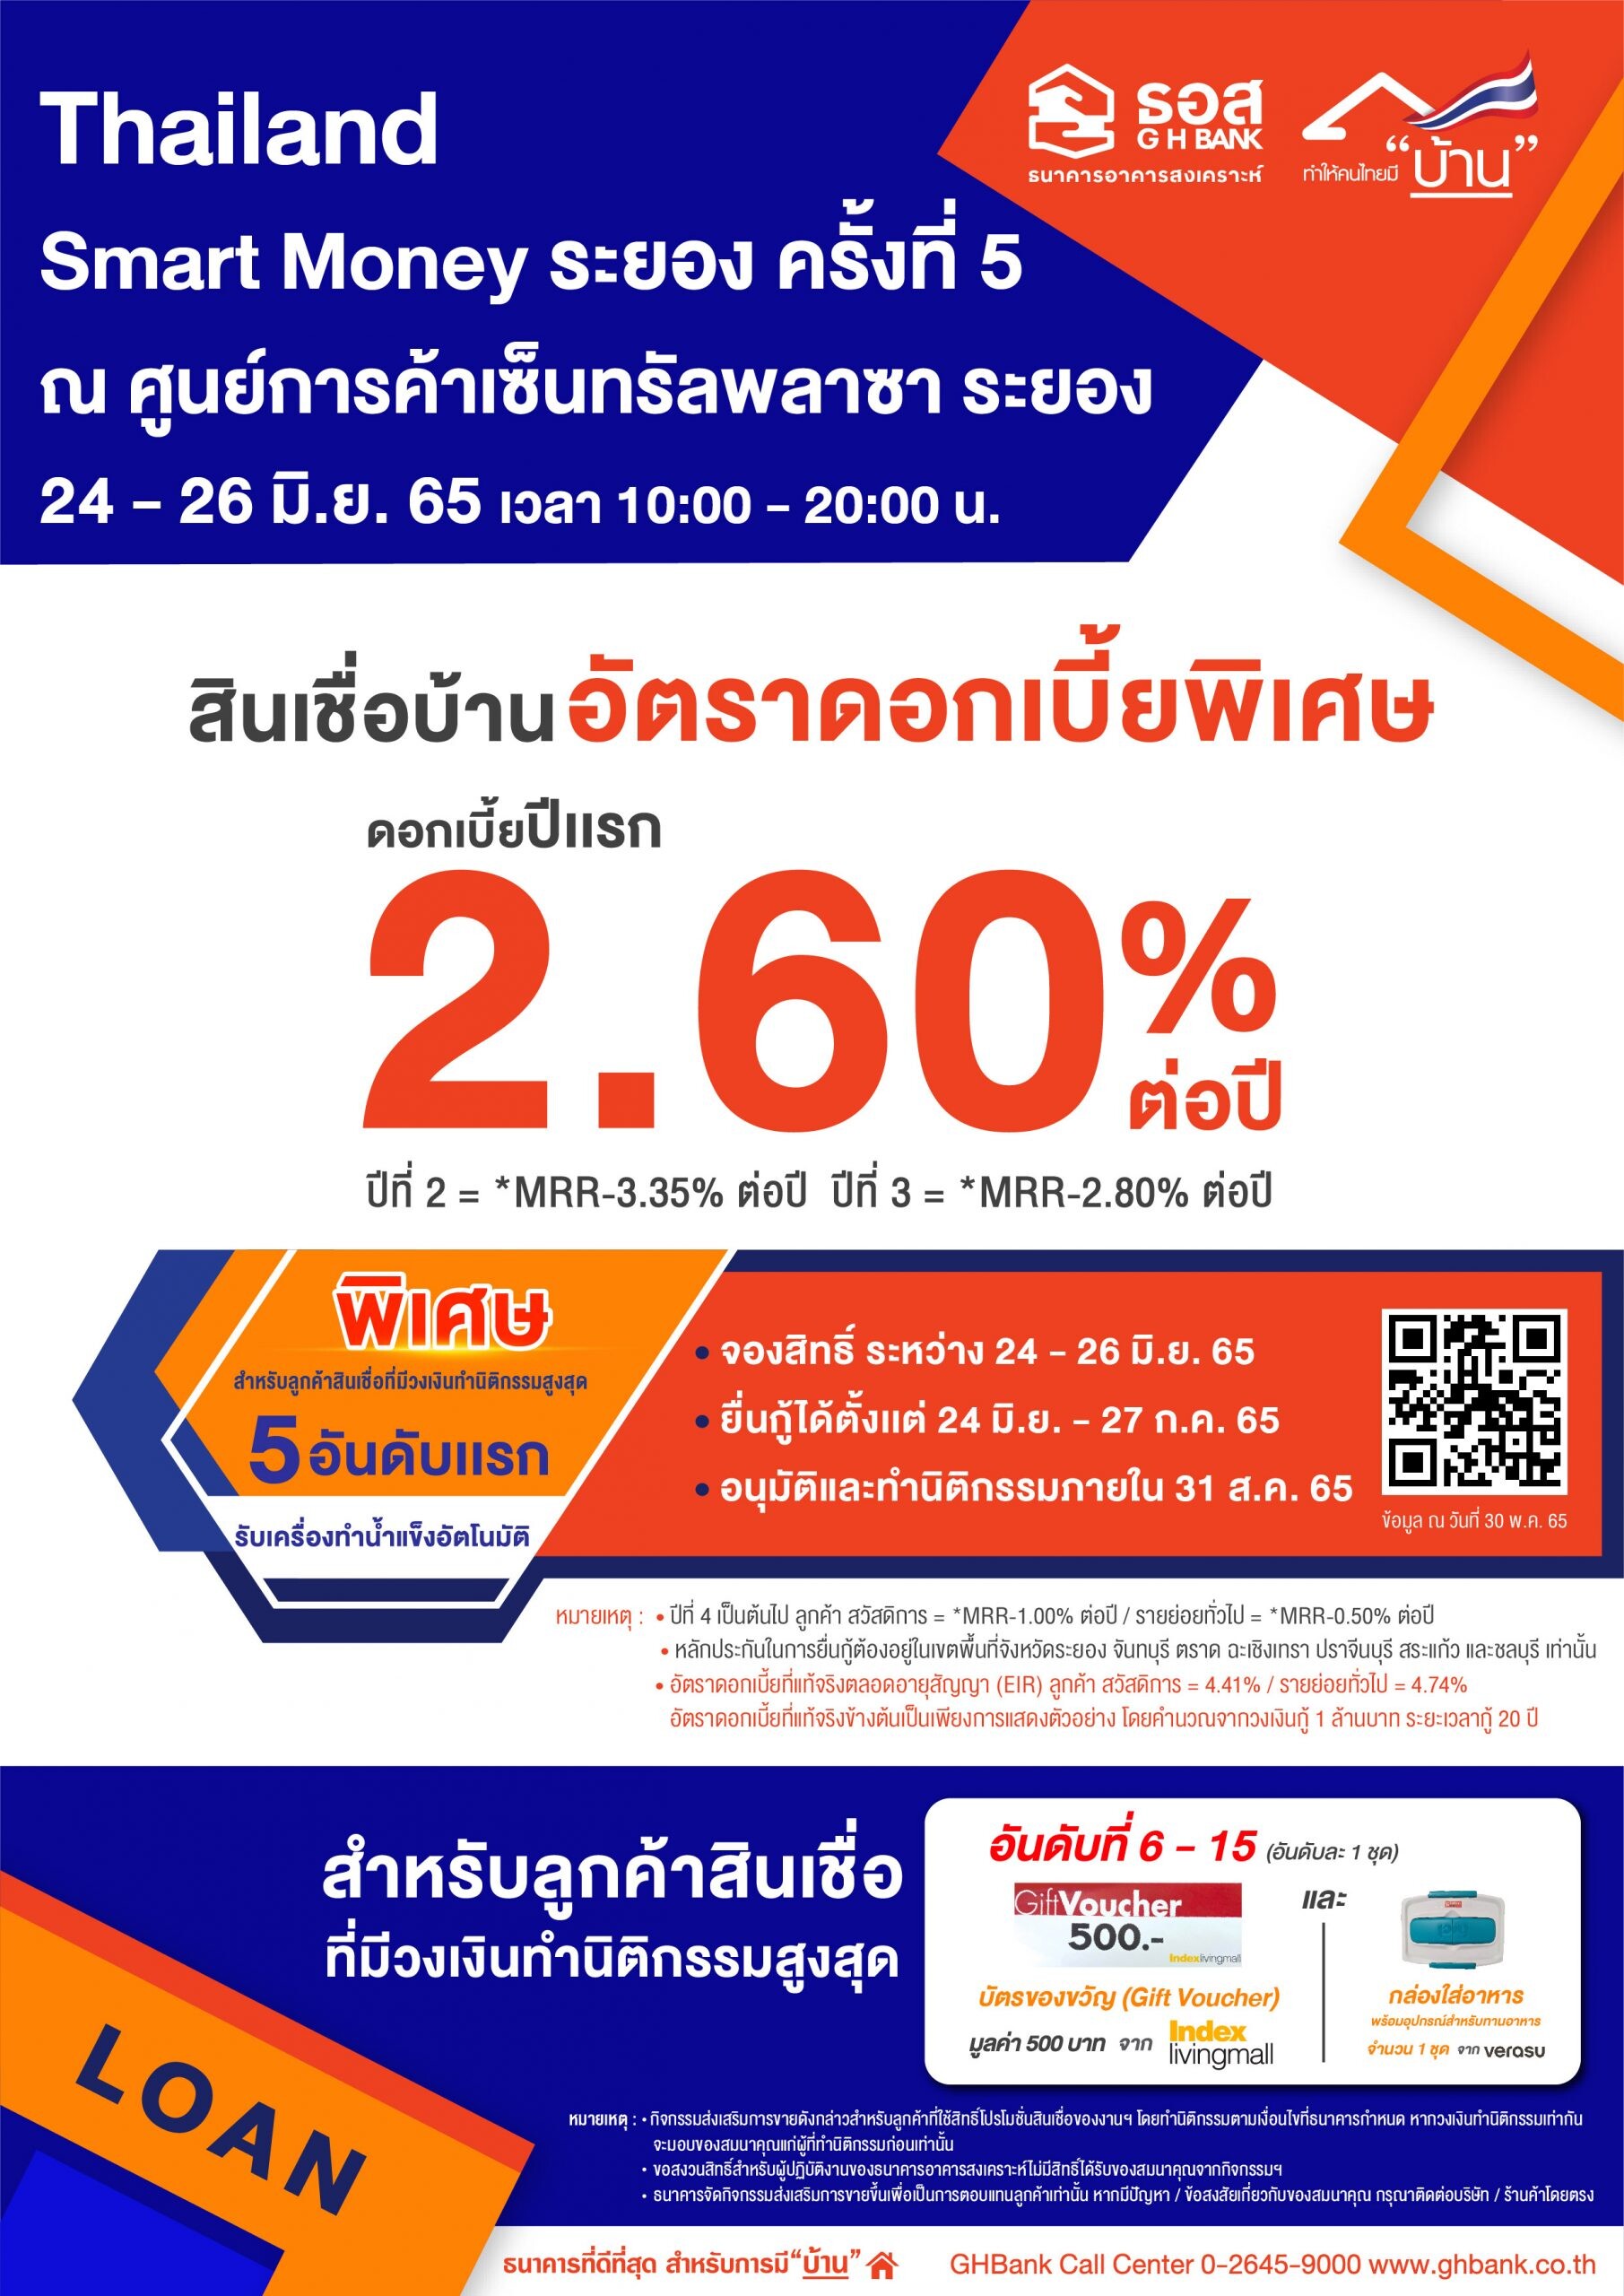 ธอส. ขนโปรโมชั่น สินเชื่อบ้านอัตราดอกเบี้ยคงที่ปีแรก  2.60% ต่อปี  ร่วมงาน "Thailand Smart Money ระยอง ครั้งที่ 5"